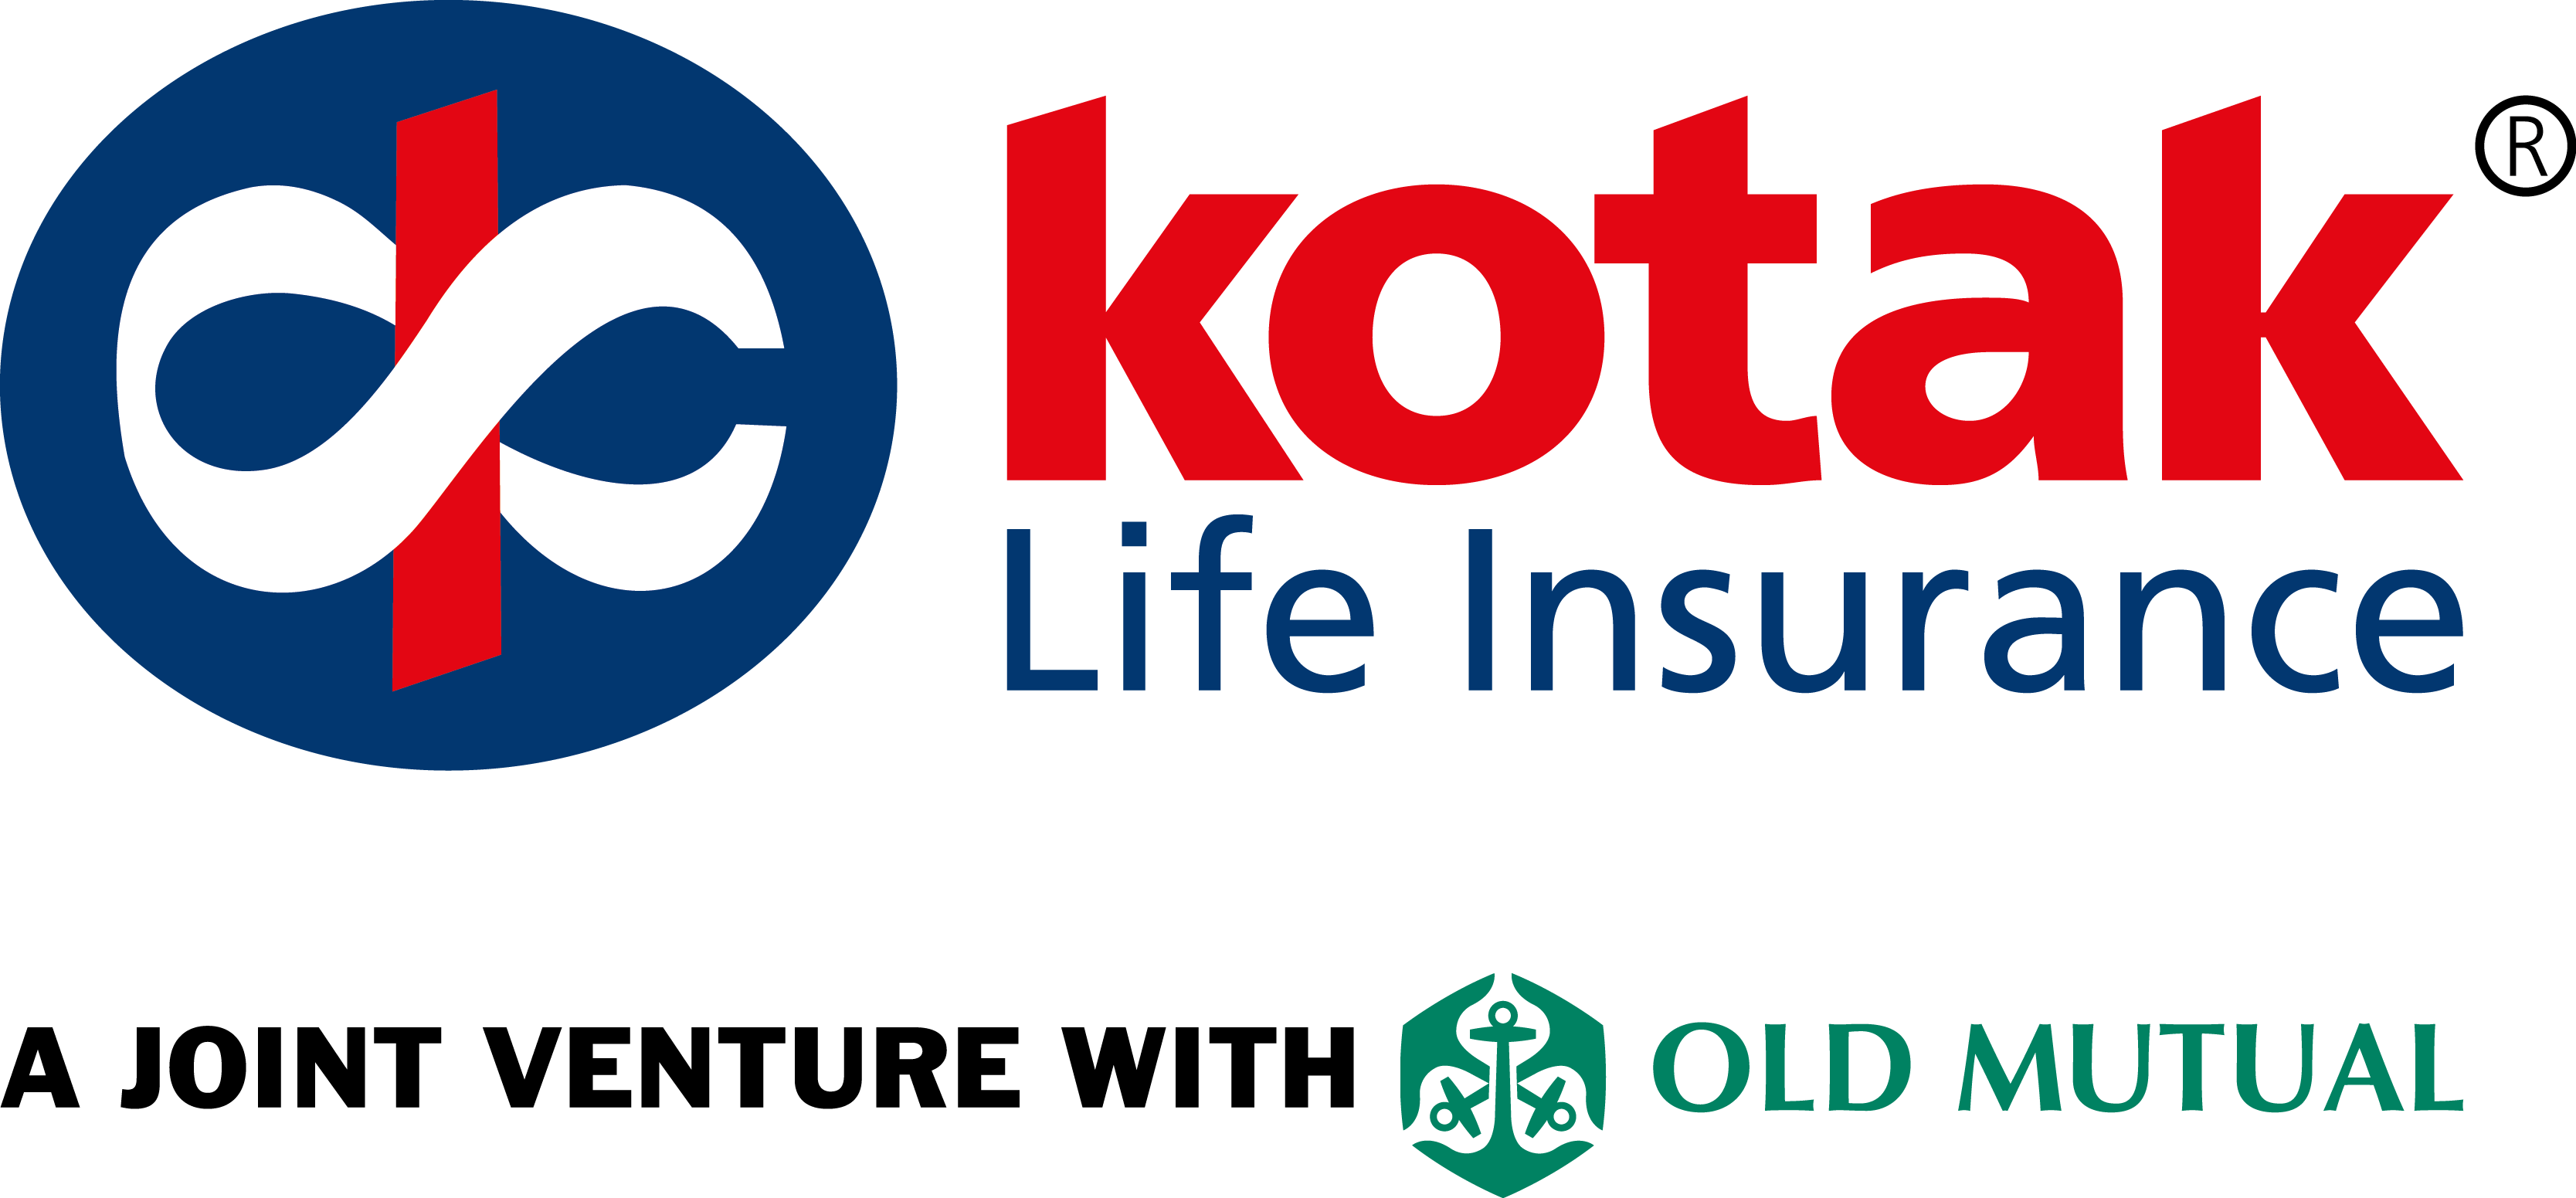 Kotak Life Insurance Logo - Kotak Life Insurance Logo (3335x1551)